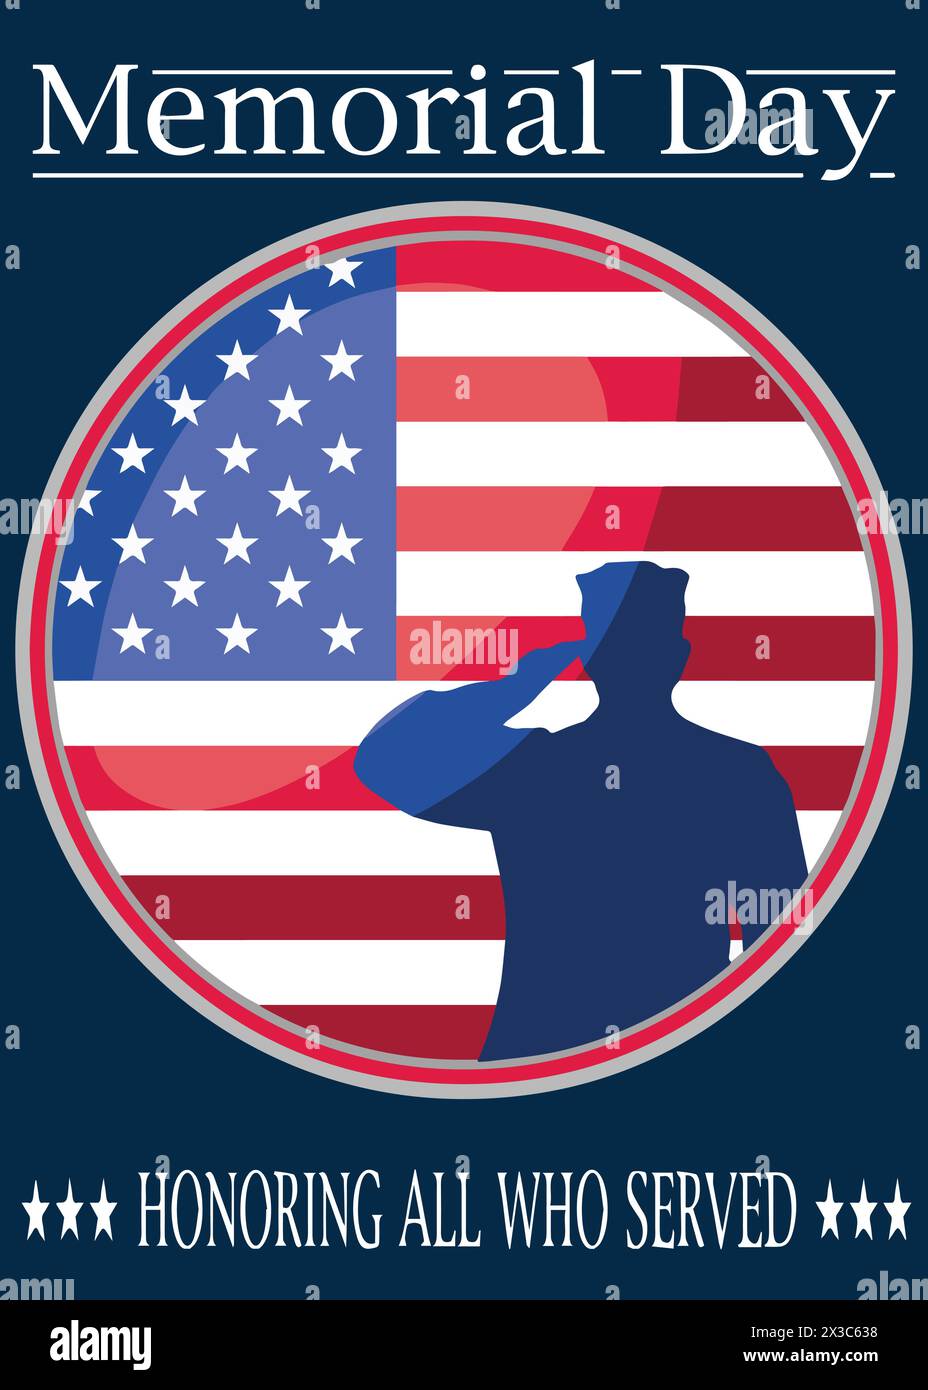 Memorial Day. Zu Ehren aller, die gedient haben. Veteran's Day Illustration Soldat mit amerikanischer Flagge Stock Vektor